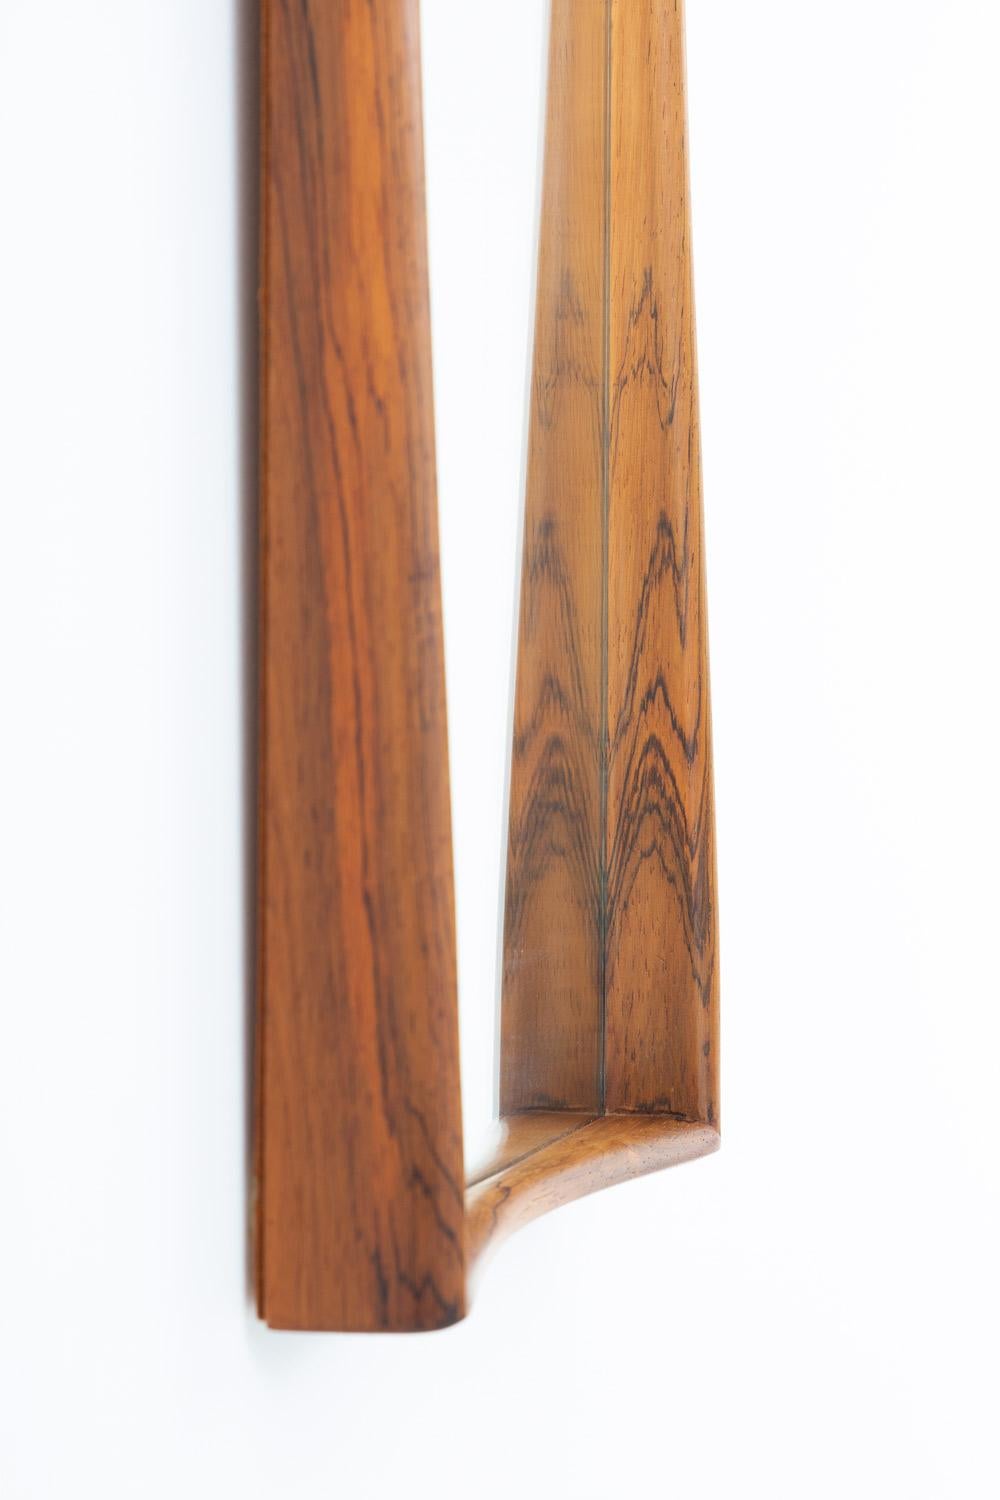 Miroir rectangulaire no 7078 en bois de rose par Rimbert Sandholt pour Glas & Trä, Suède.
Ce miroir est d'une grande qualité de construction et a un cadre magnifiquement formé.
Une table d'appoint assortie est également disponible.
Condition :